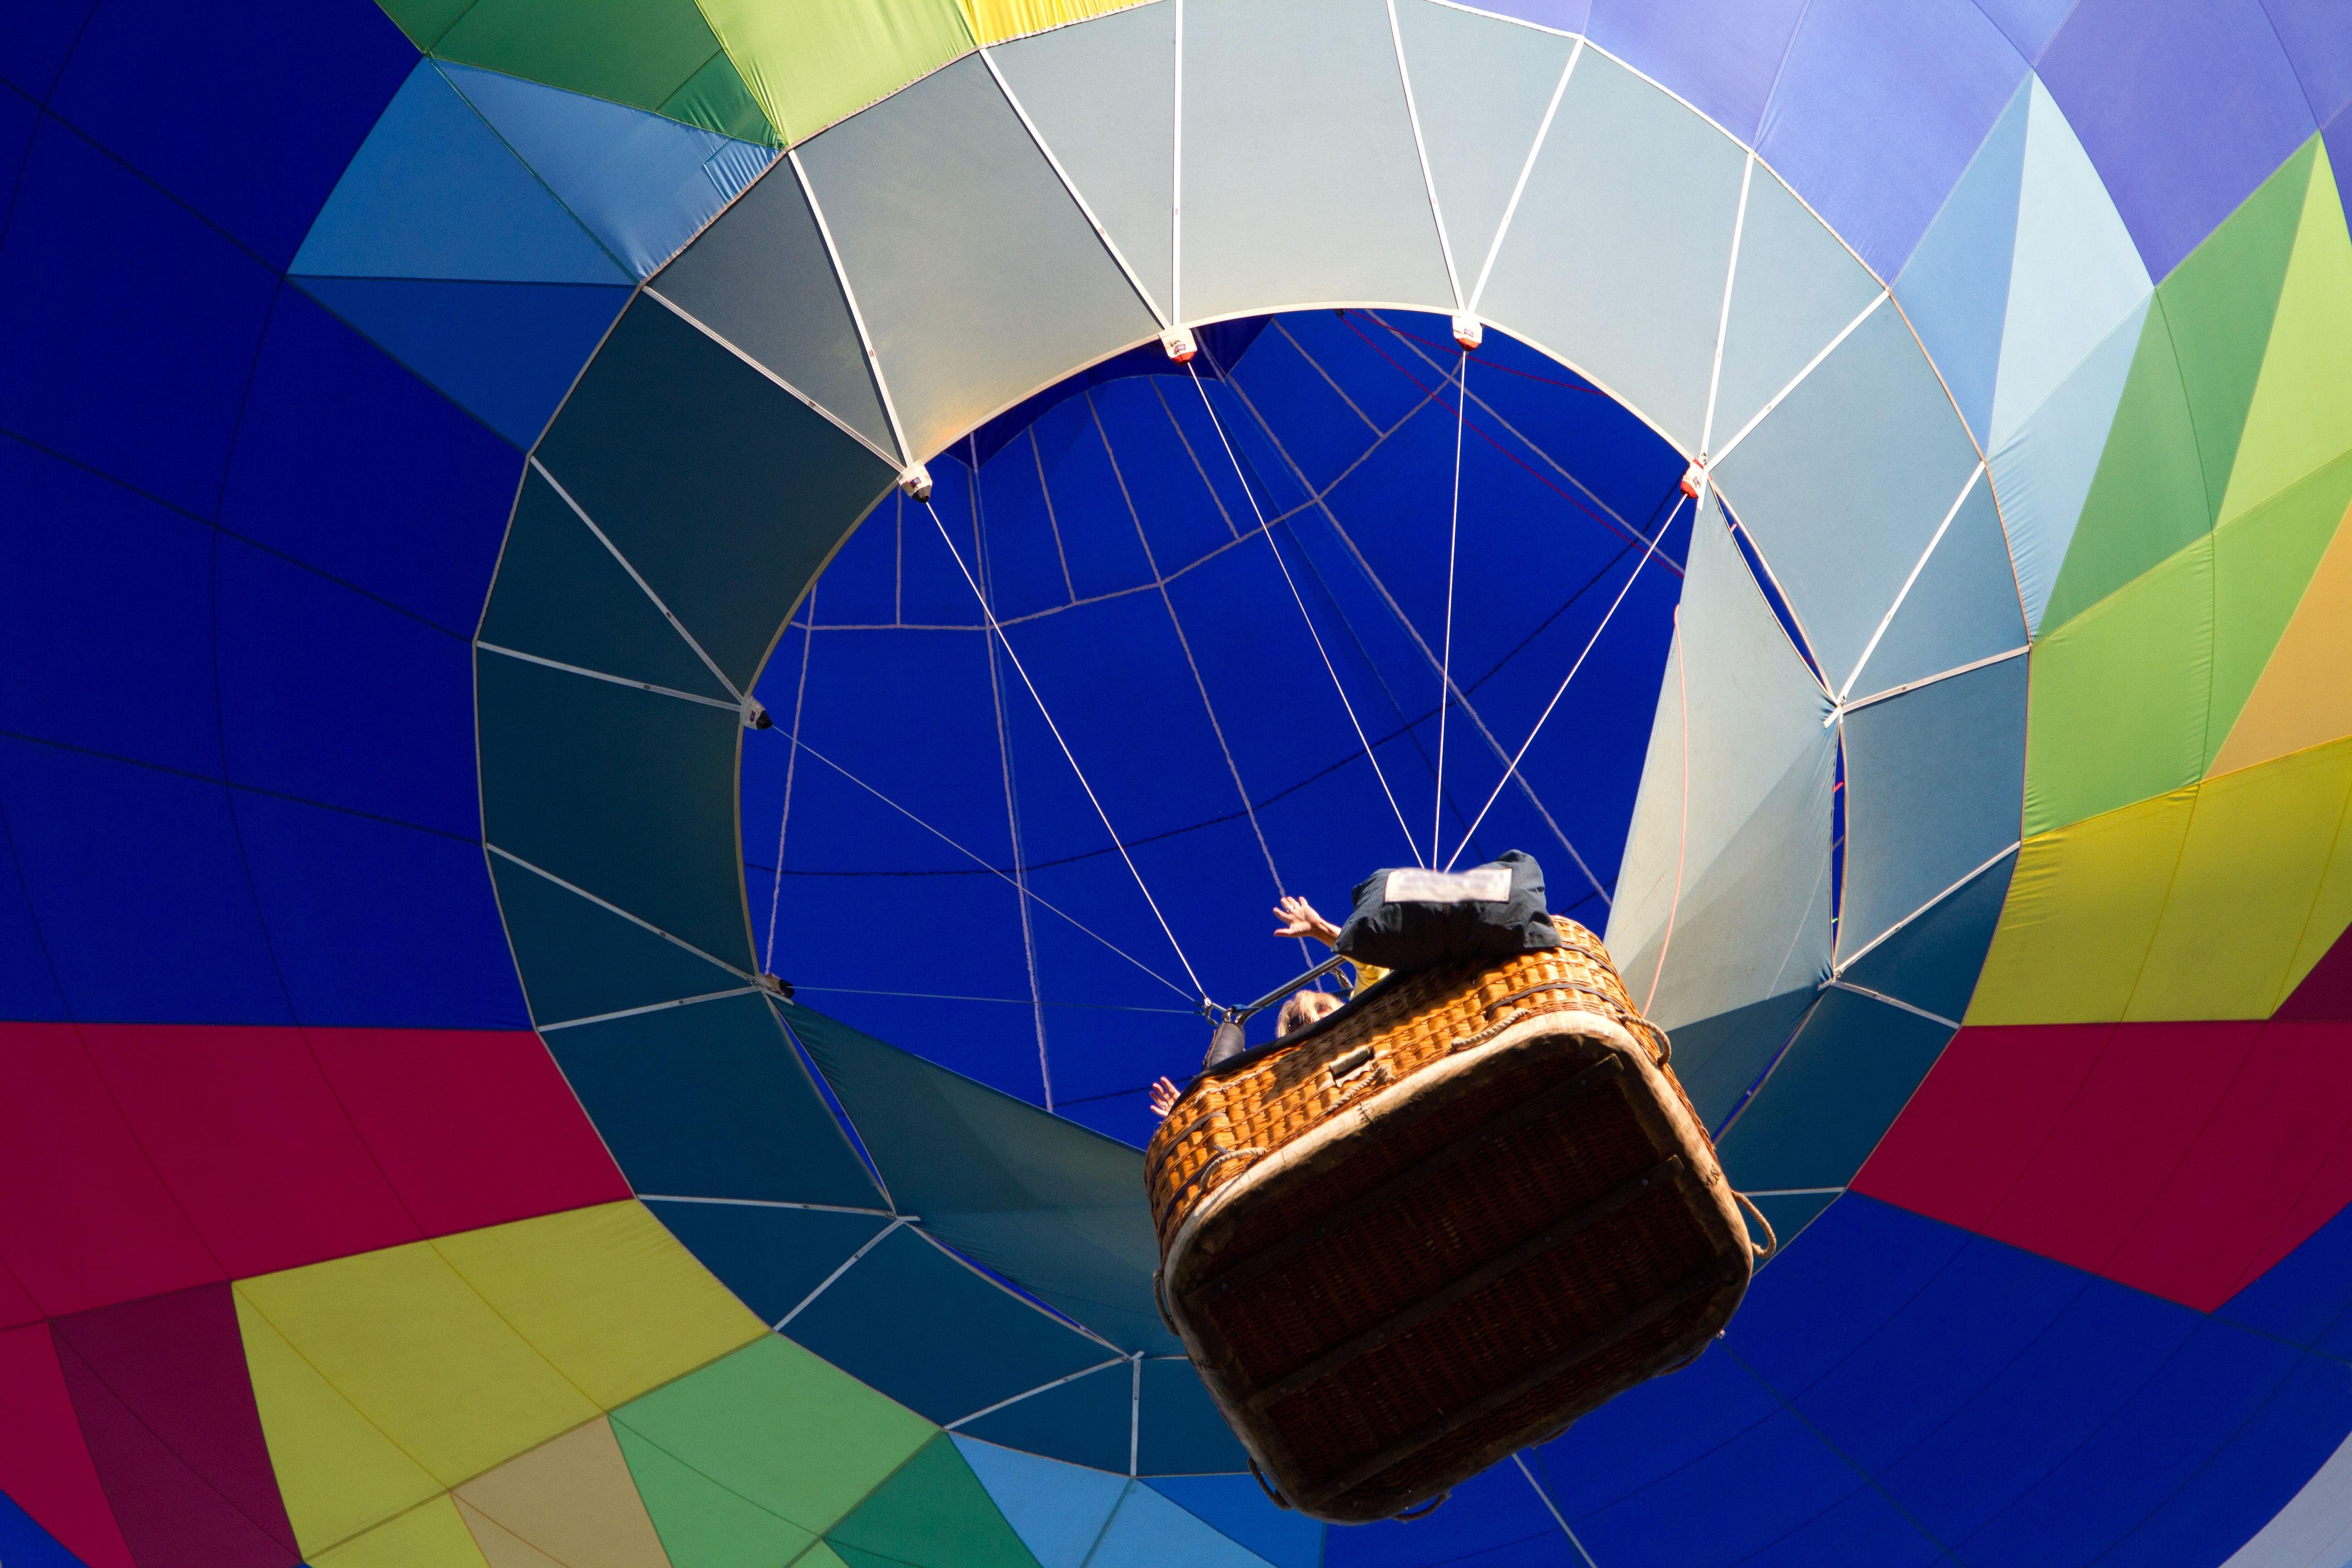 Hot air balloon Gold Coast Ride